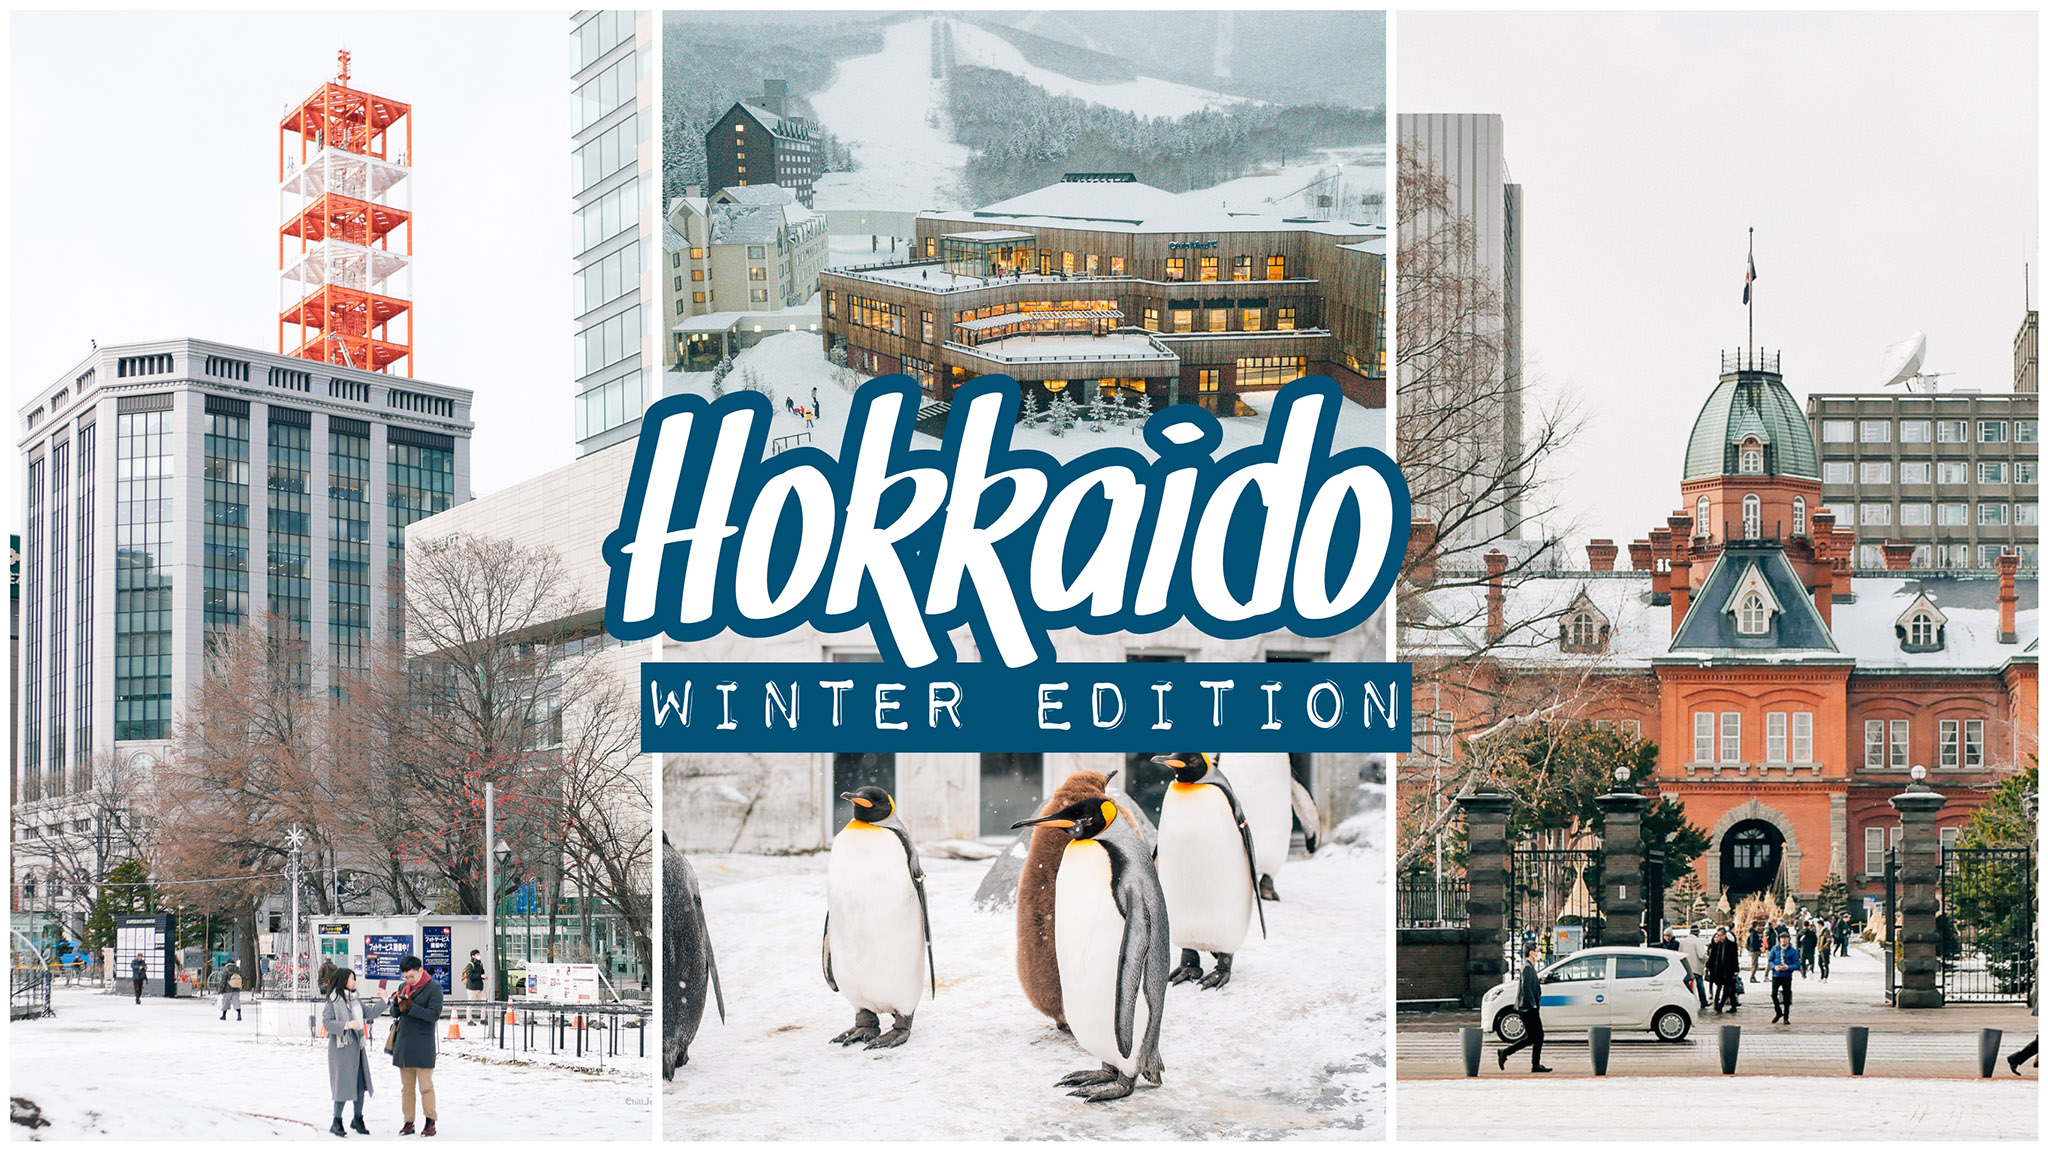 แจกแพลนเที่ยว Hokkaido หน้าหนาว 5 วัน กินเที่ยวช็อป ครบ! | Hokkaido winter 2020 – Chill Journey | Thai Travel & Lifestyle blog